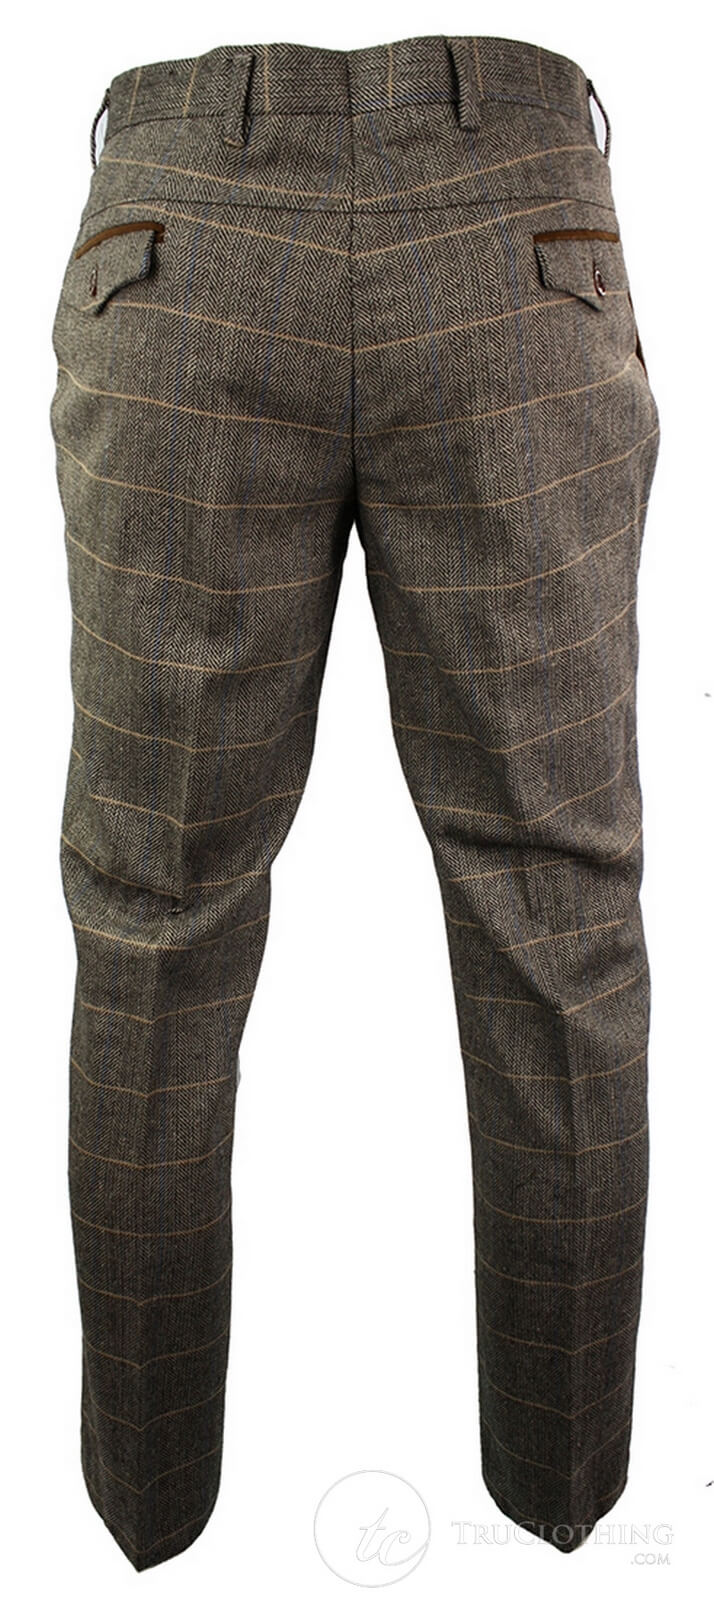 Mens Vintage Tweed Check Trouser Herringbone Tan Brown Slim Fit Regular:  Buy Online - Happy Gentleman United States